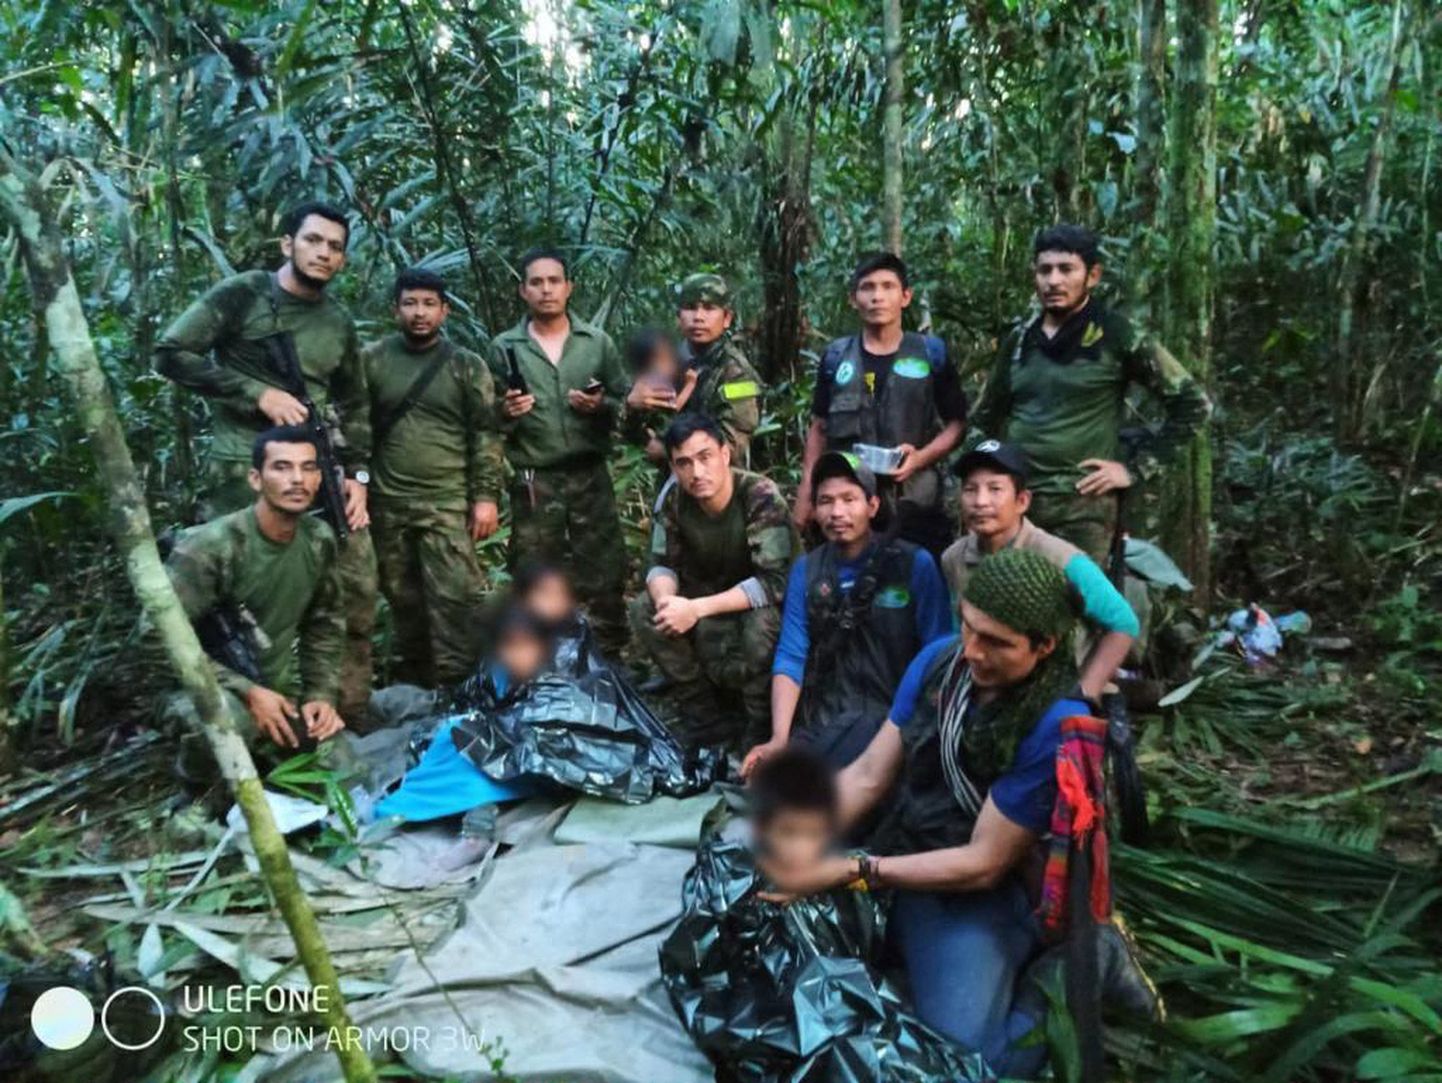 Sel Colombia presidendikantselei fotol on näha päästjate jõupingutuste vili - armee osalusel aset leidnud operatsiooniga leiti selvast elusana neli põliselanikust last vanuses üks kuni 13 eluaastat.